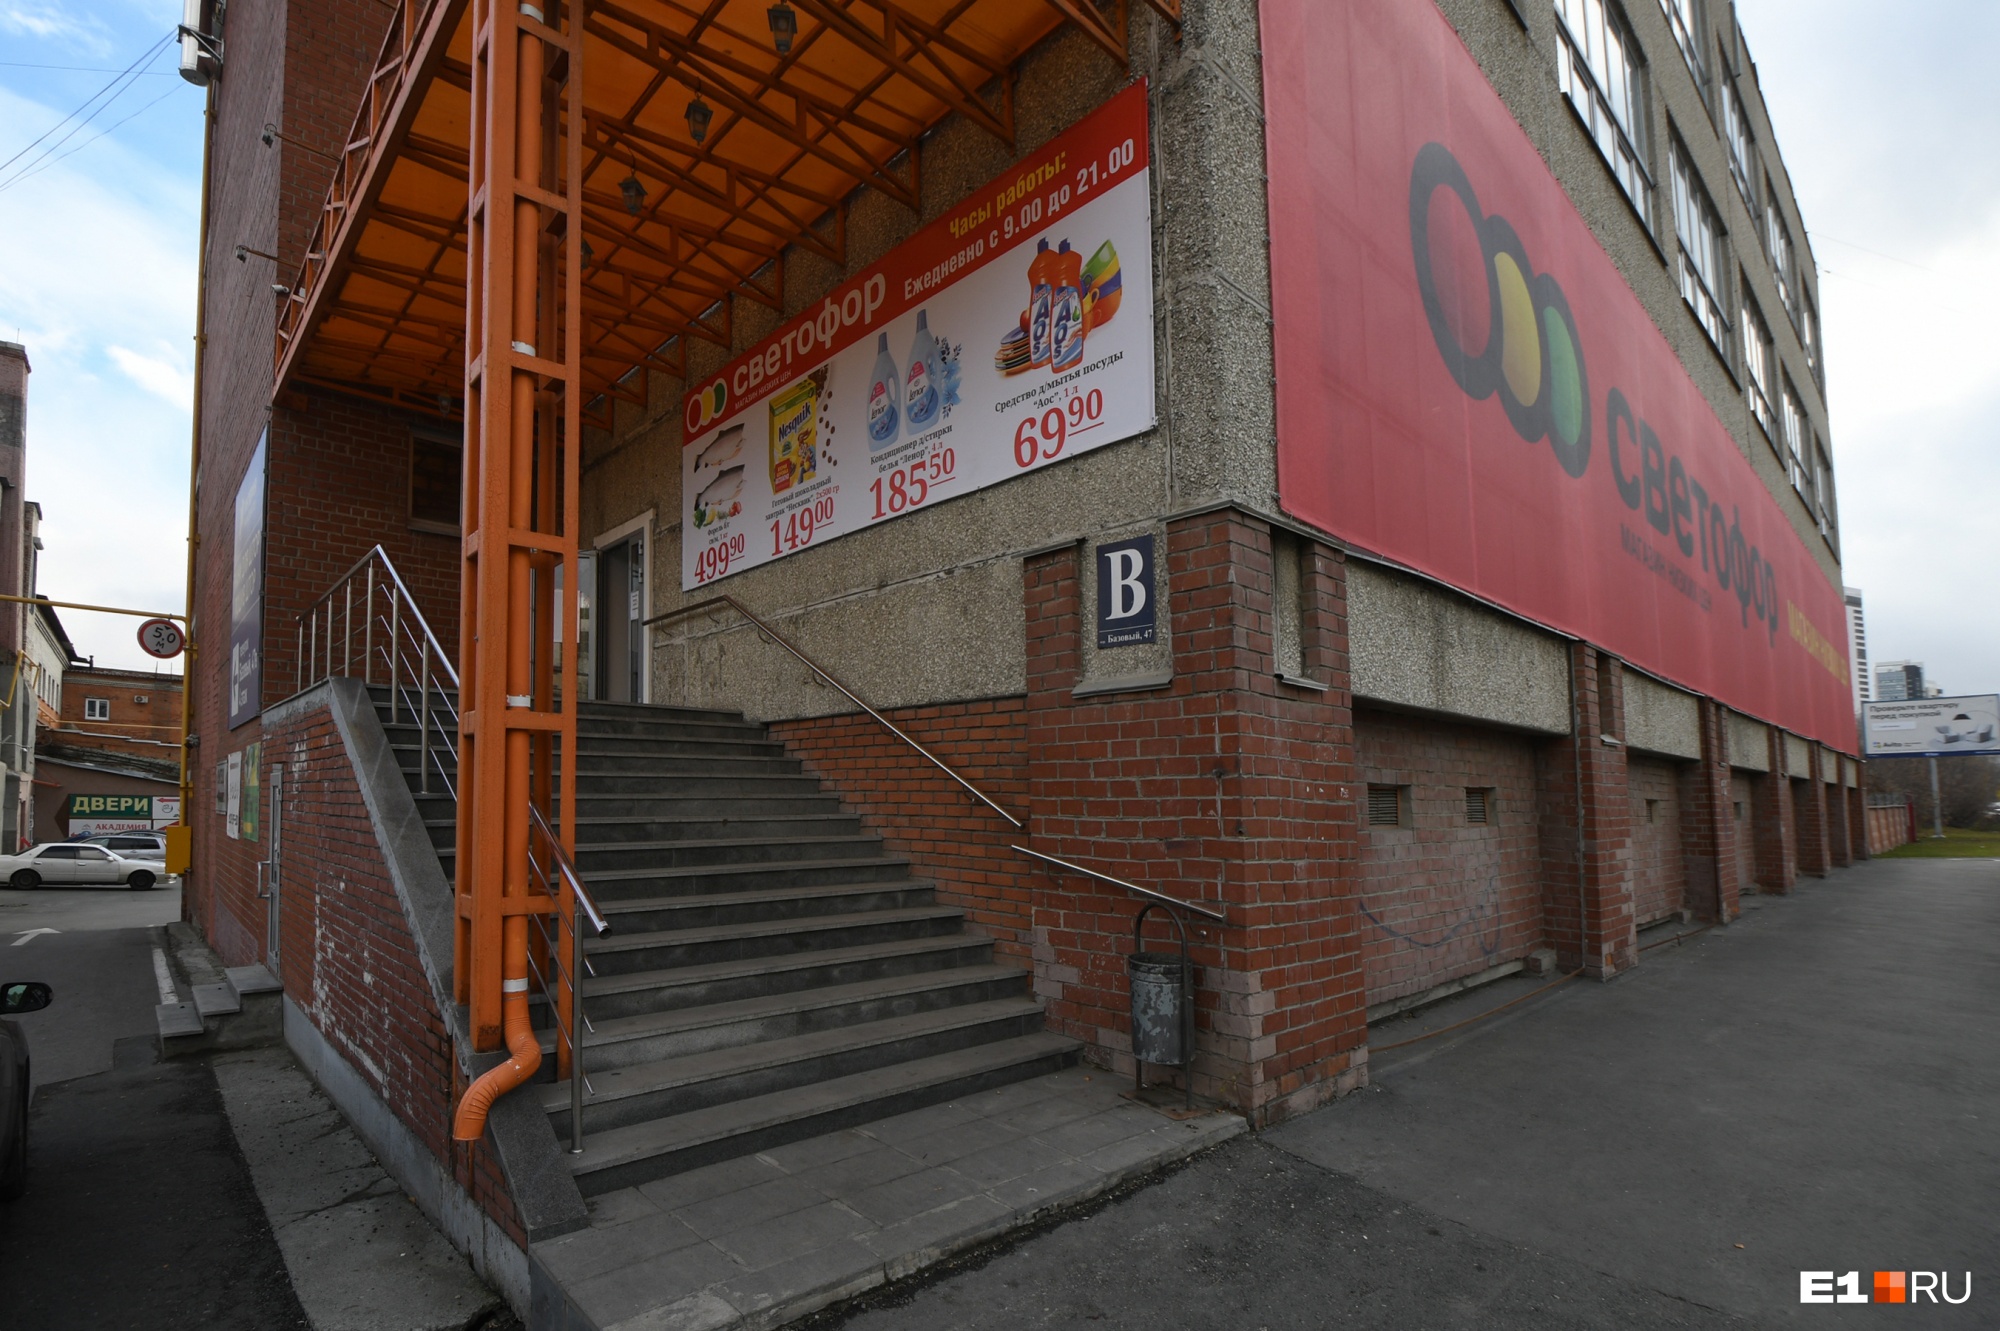 В крупной сети продуктовых магазинов Екатеринбурга обнаружили просрочку и поврежденные товары